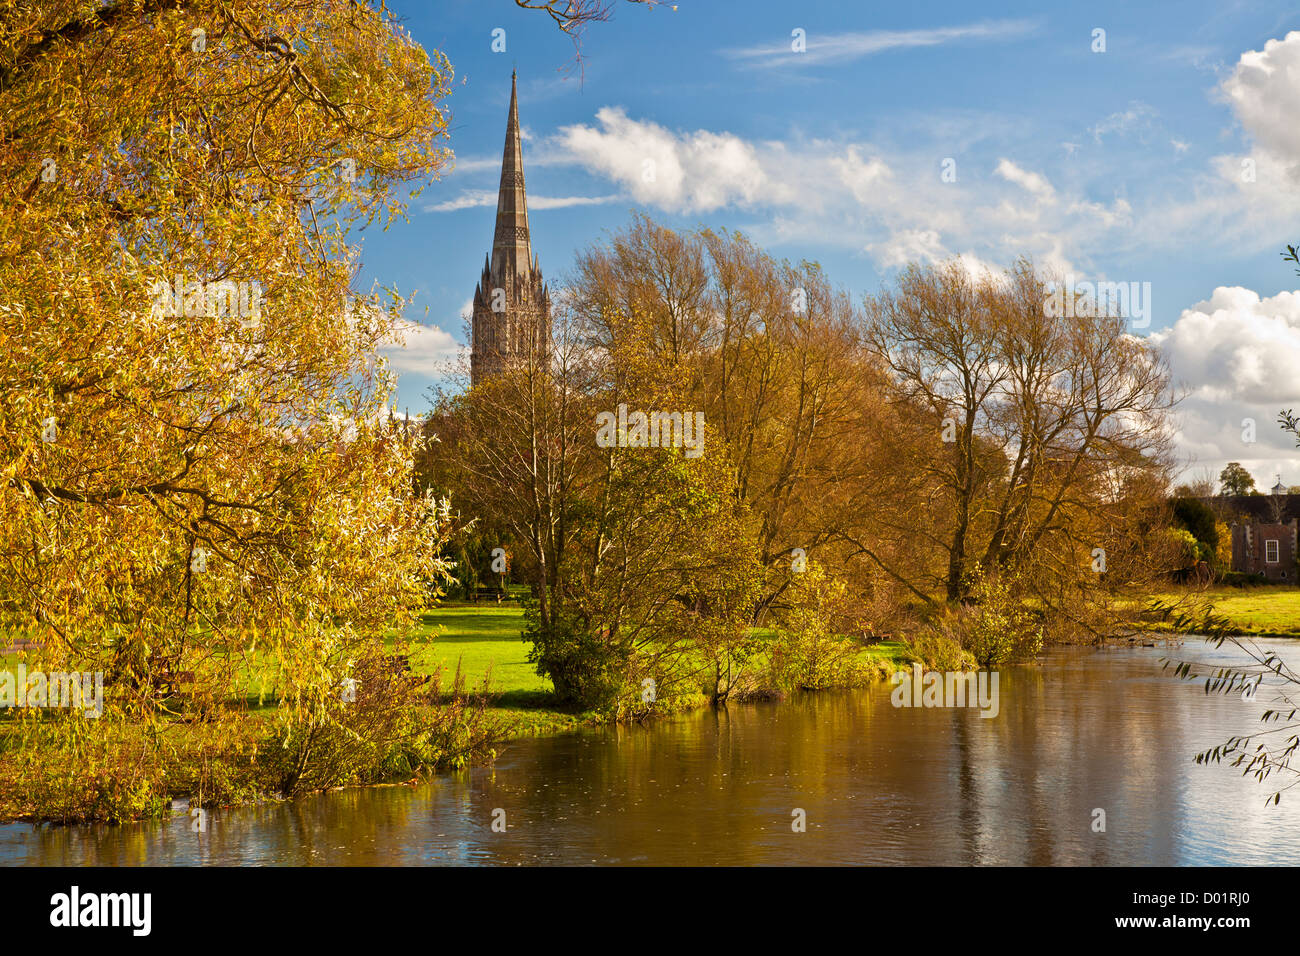 Une vue d'automne de la flèche de la cathédrale de Salisbury, Wiltshire médiévale, England, UK avec la rivière Avon à l'avant-plan. Banque D'Images